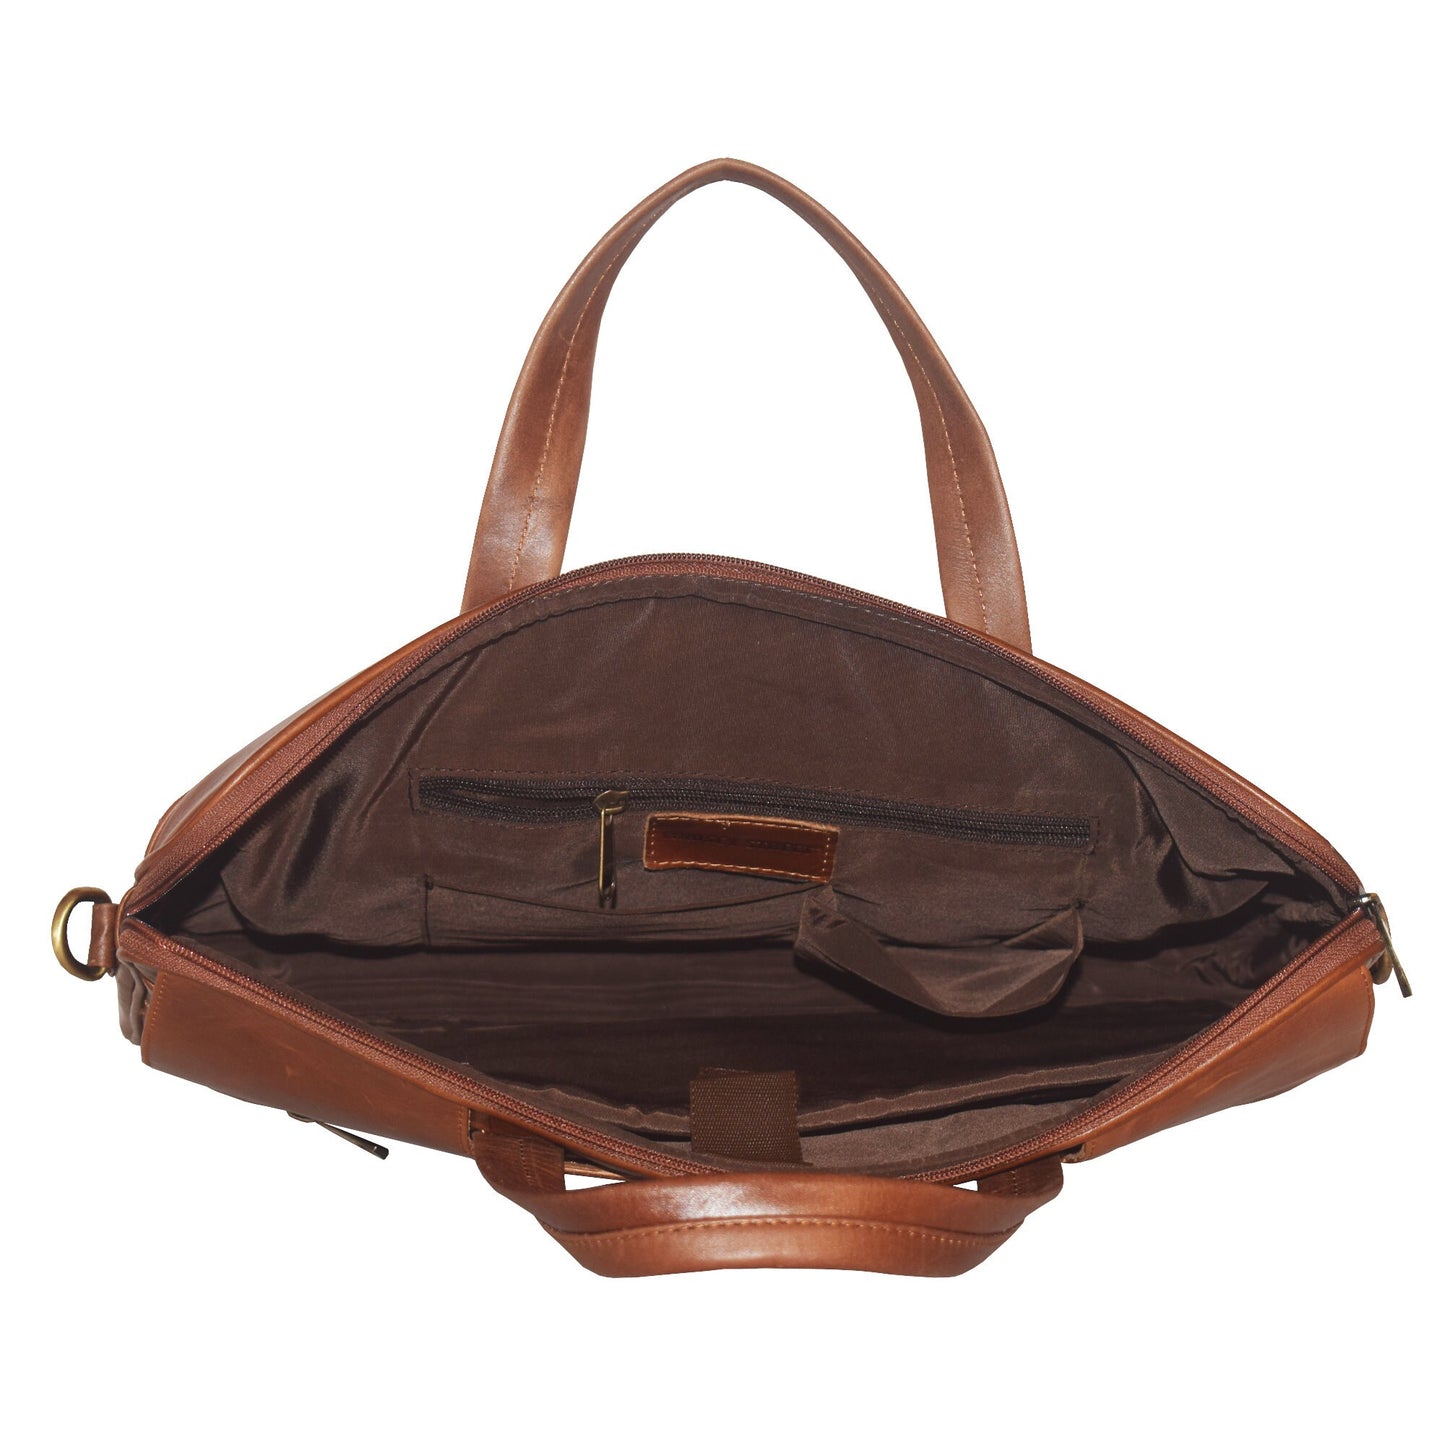 Personalized Handmade Vintage Leather Handbag Briefcase Messenger Bag Men Leather Shoulder Bag School Laptop Bag Best Fathers Day Gift